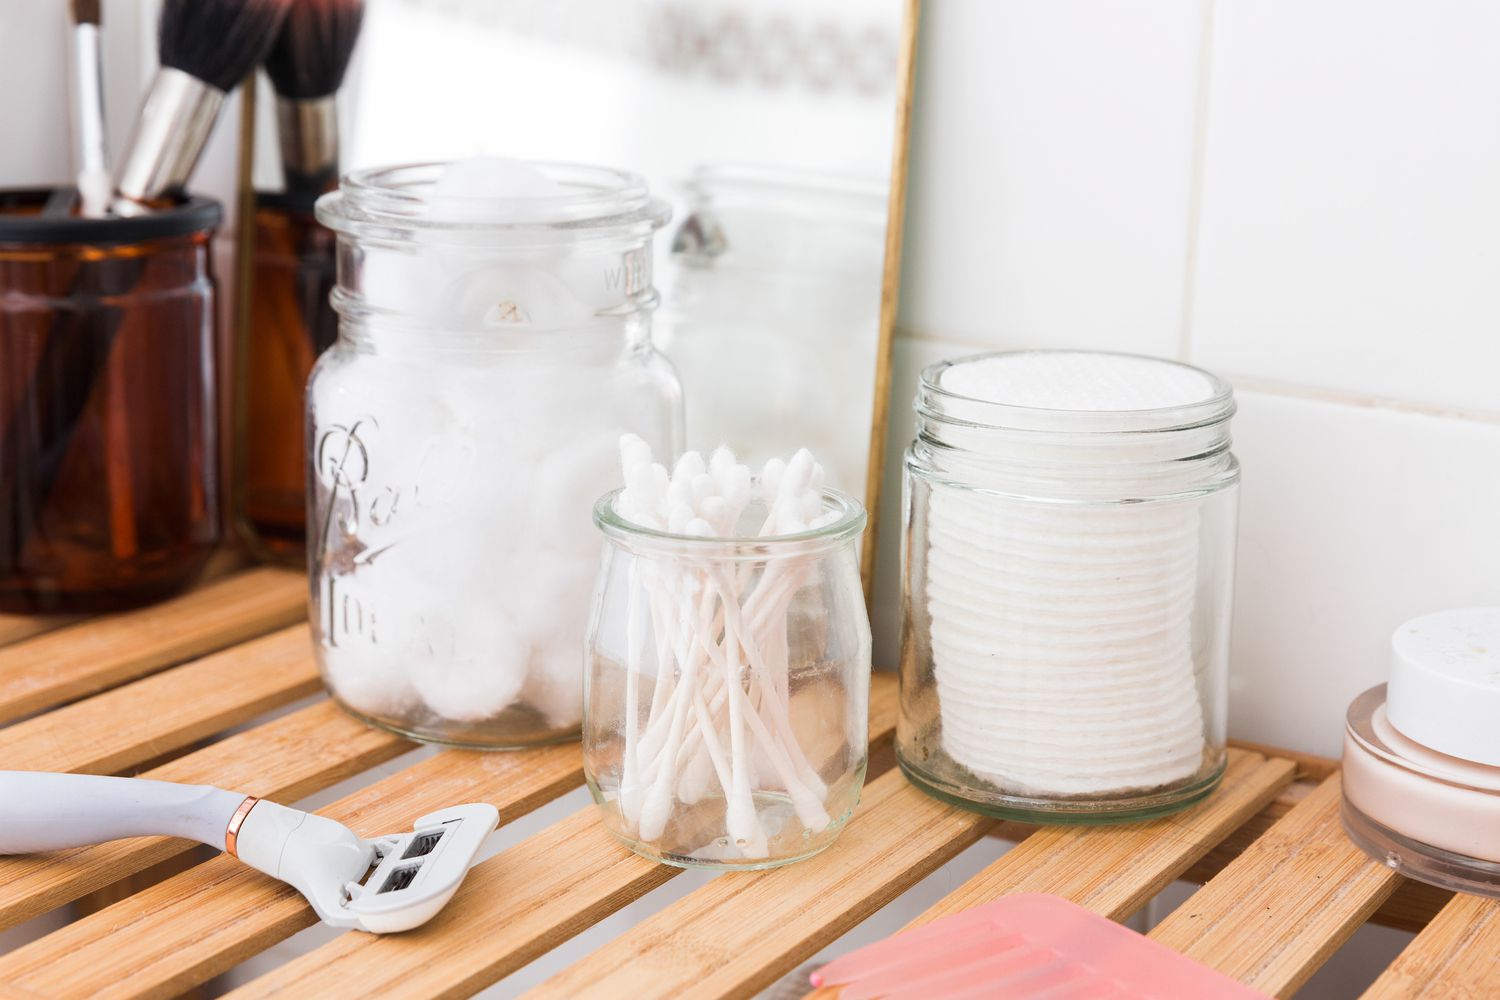 using jars to store toiletries